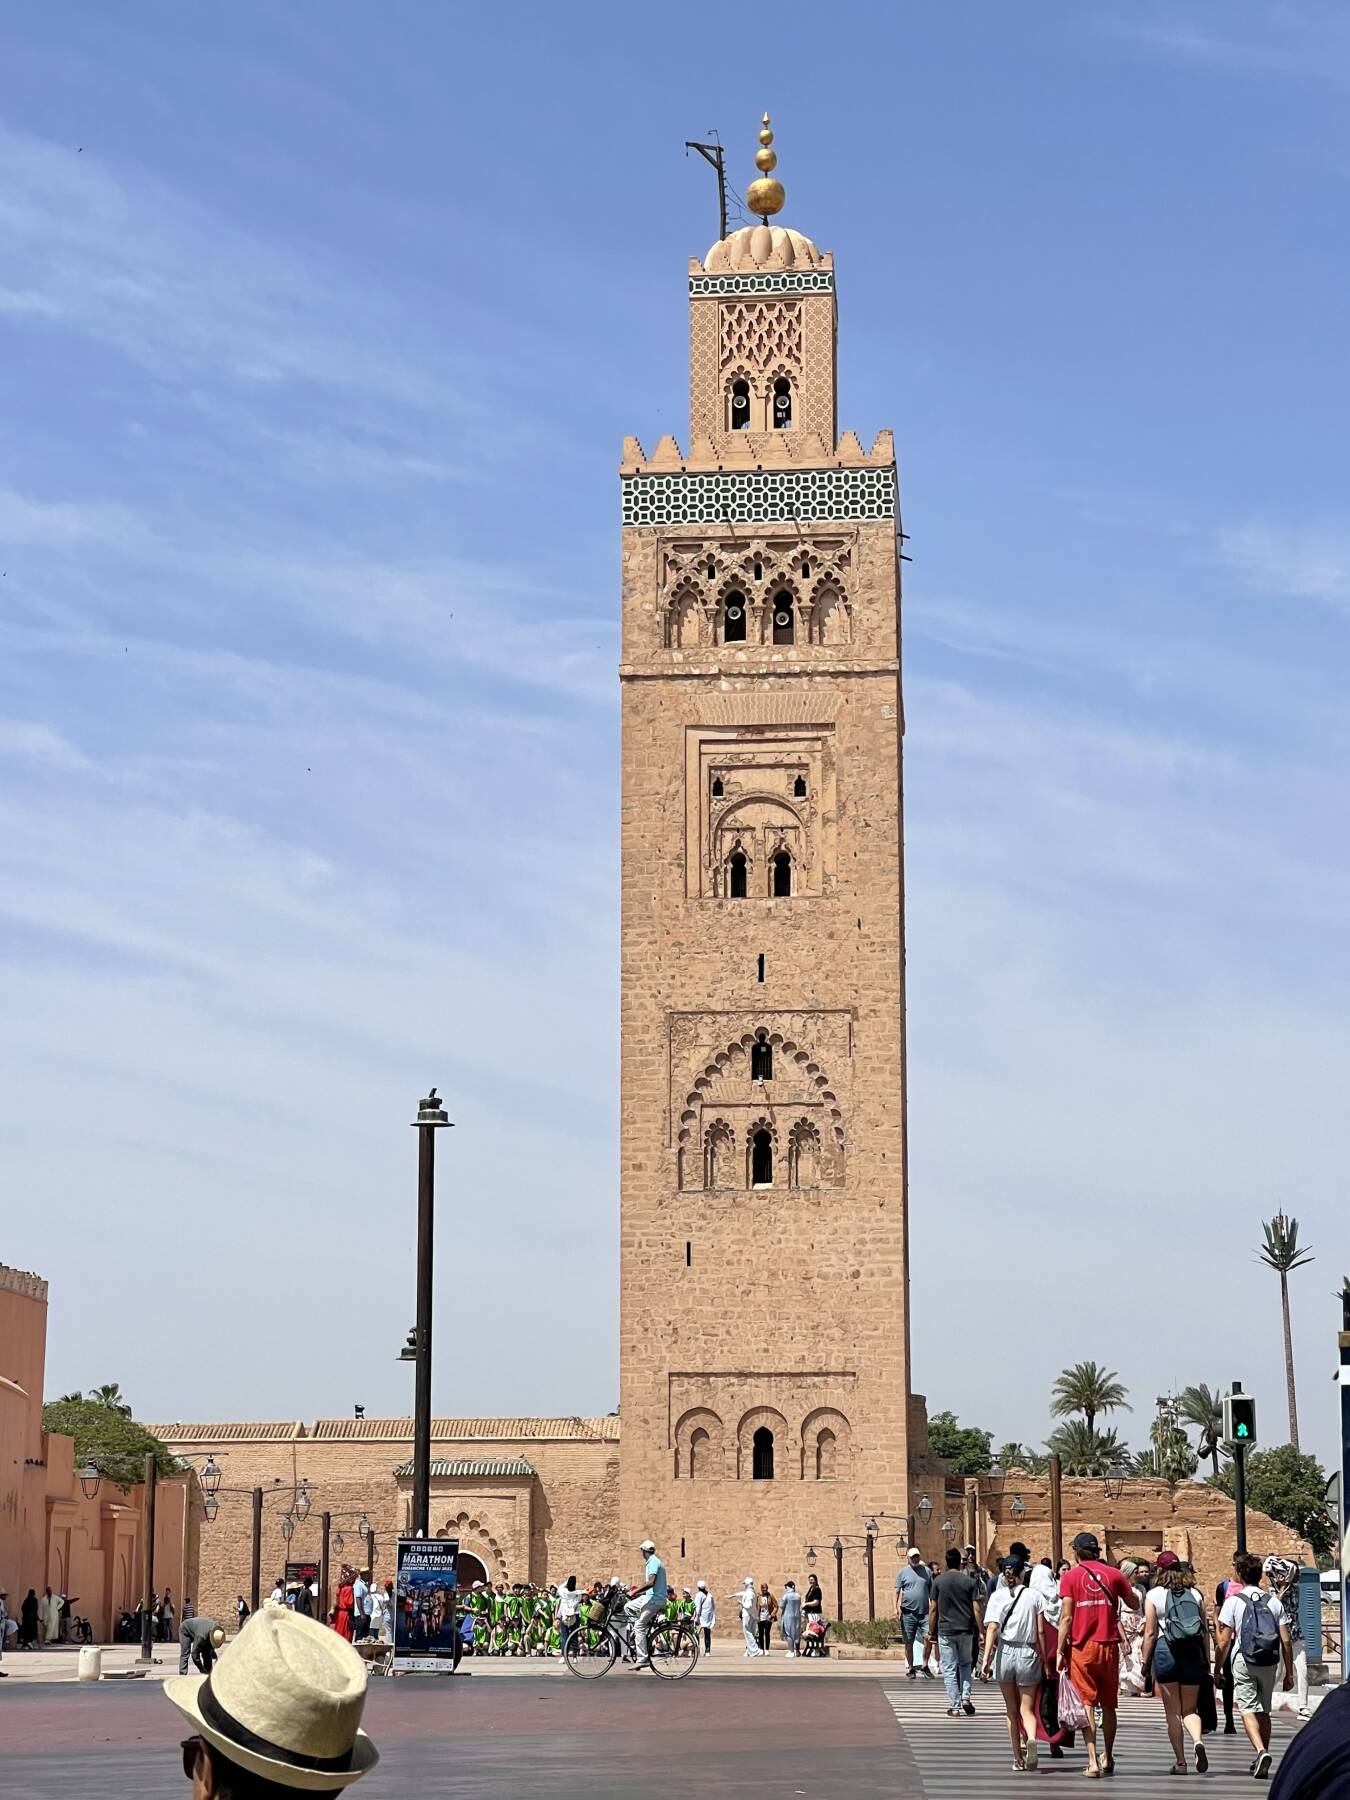 Silvester in Marokko, eine Reise für Frauen